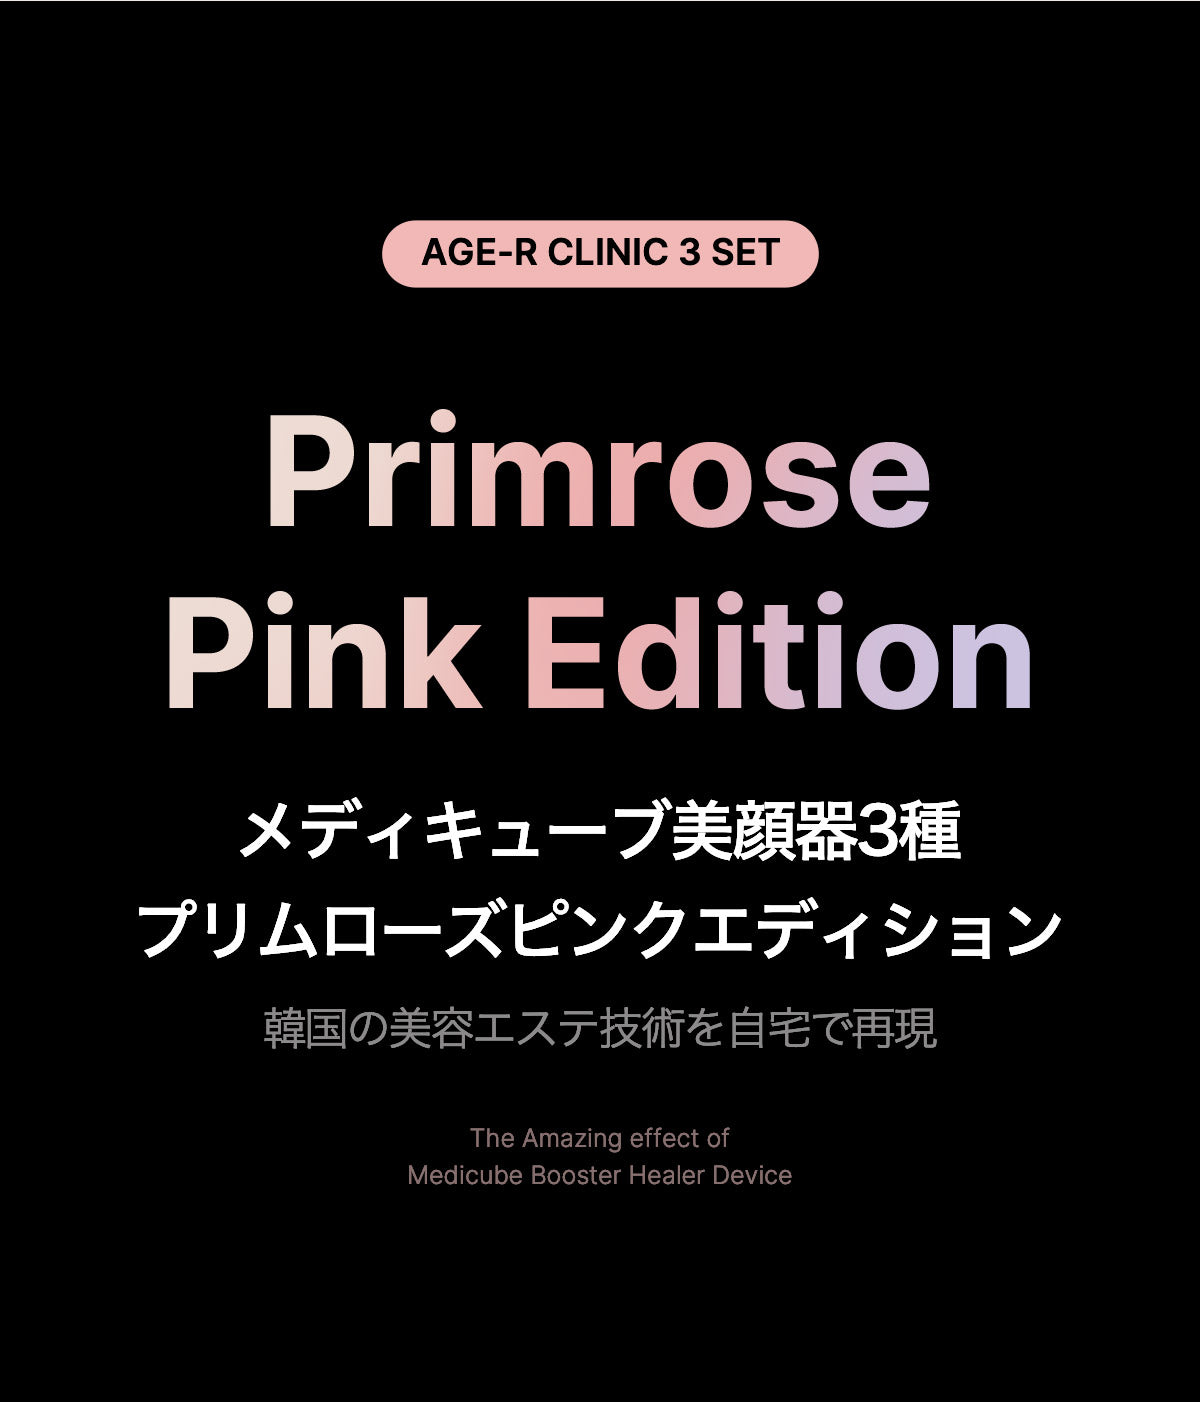 クーポン価格:24,500円]Primrose Pink Edition EMS美顔器AGE-R 